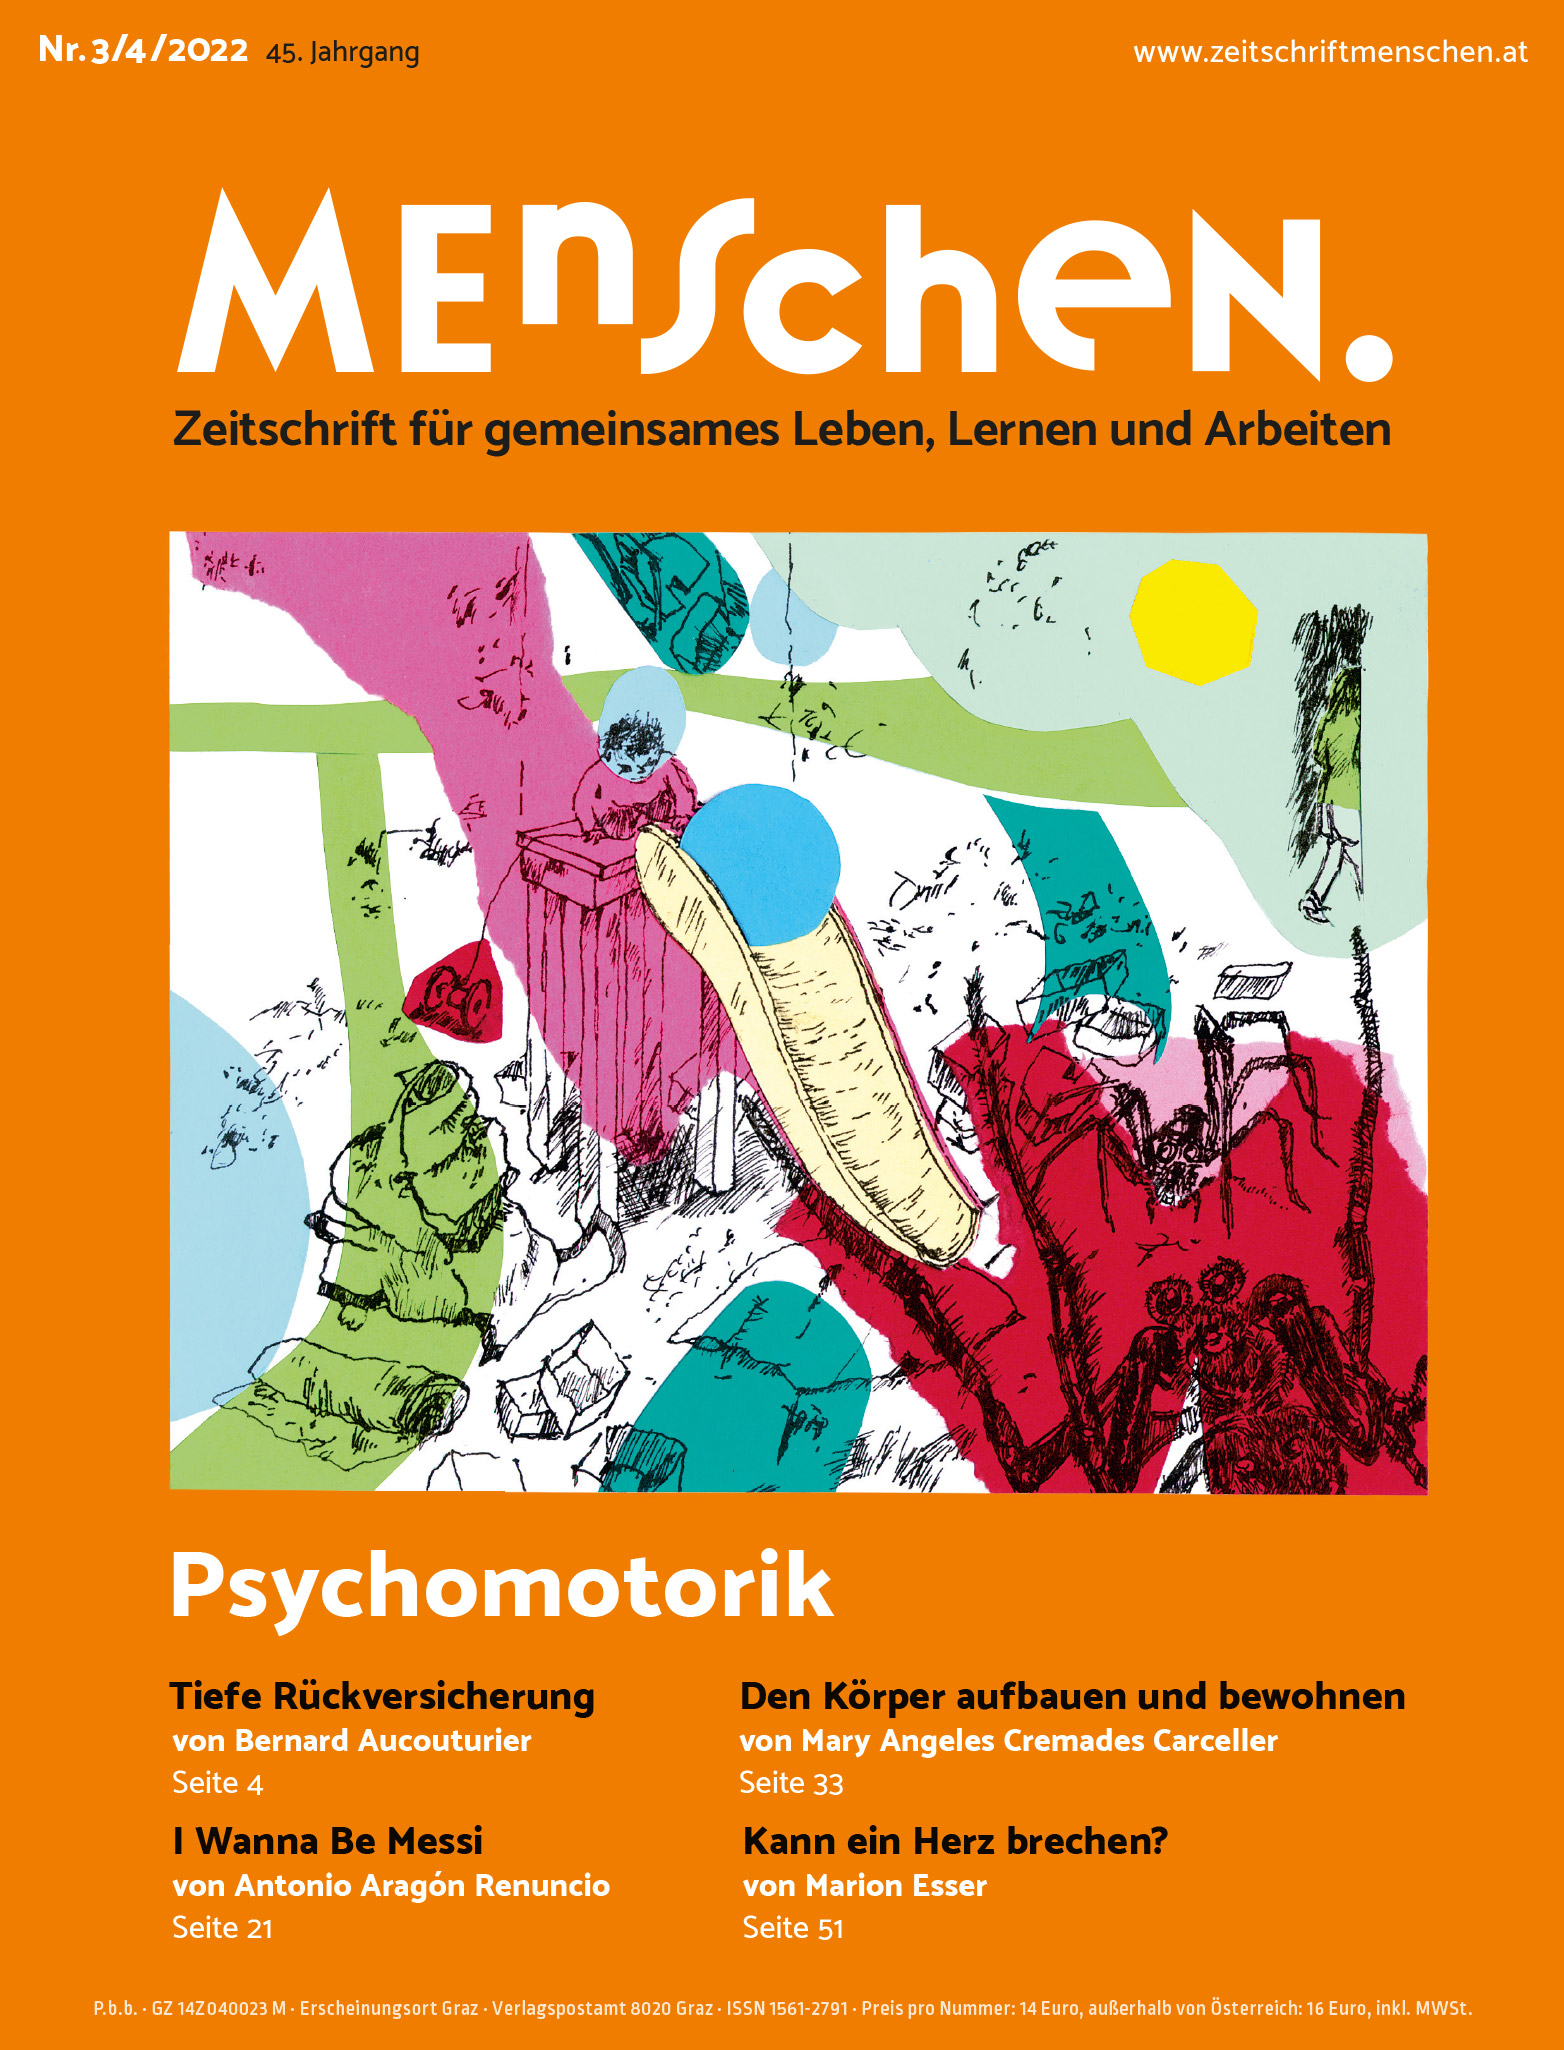 Titelbild der Zeitschrift BEHINDERTE MENSCHEN, Ausgabe 3/4/2022 "Psychomotorik"